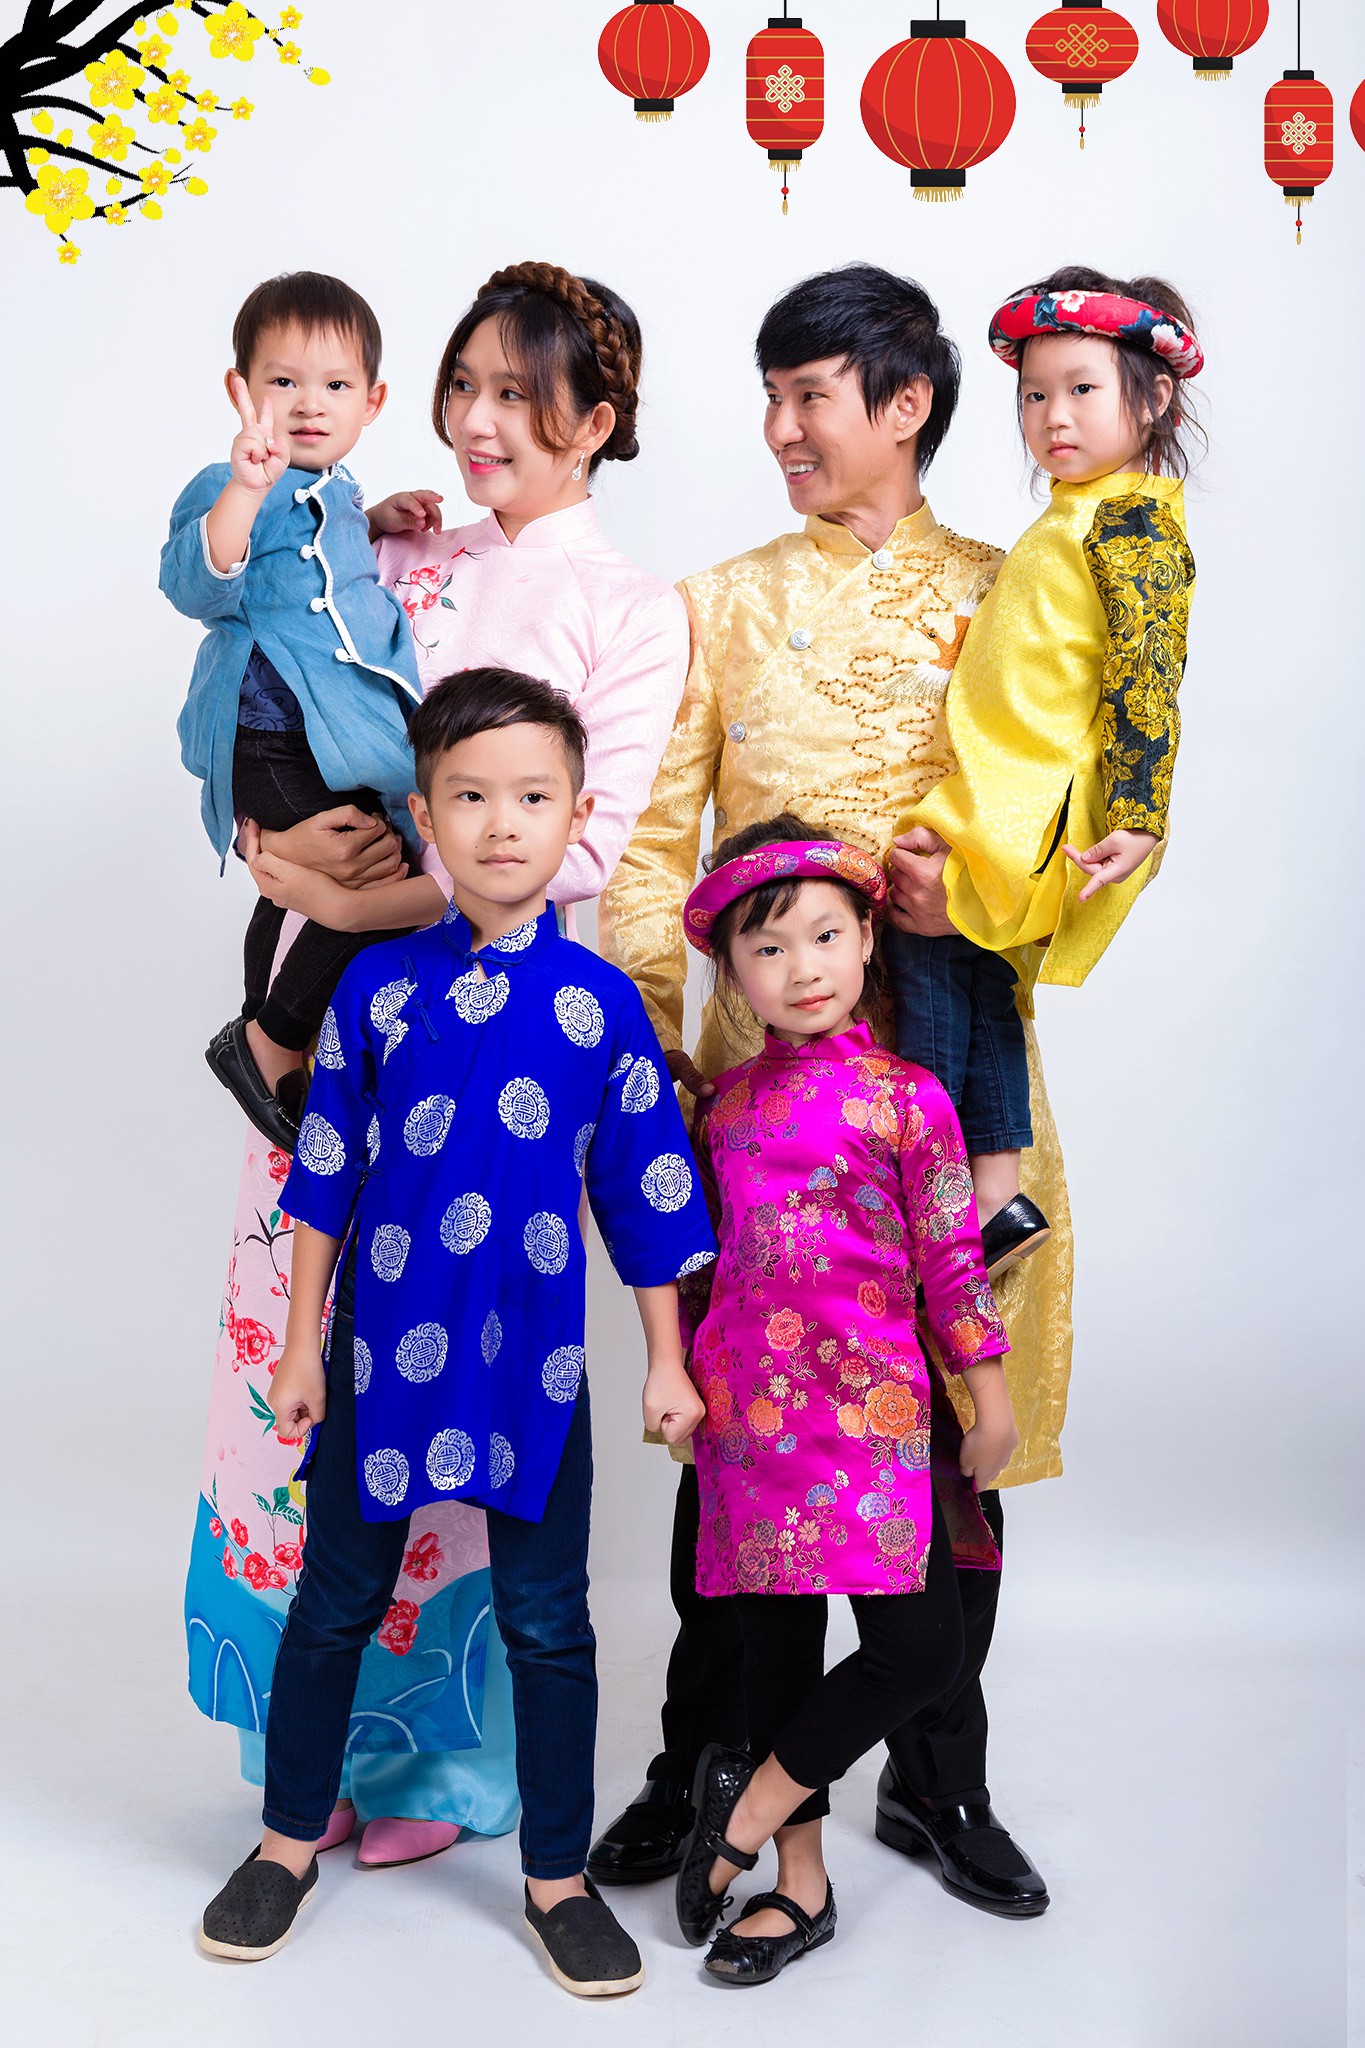 Hãy cùng khám phá bức hình đầy cảm xúc về gia đình Lý Hải Minh Hà trong mùa Xuân, với những khoảnh khắc đáng yêu và ấm áp của cả gia đình.